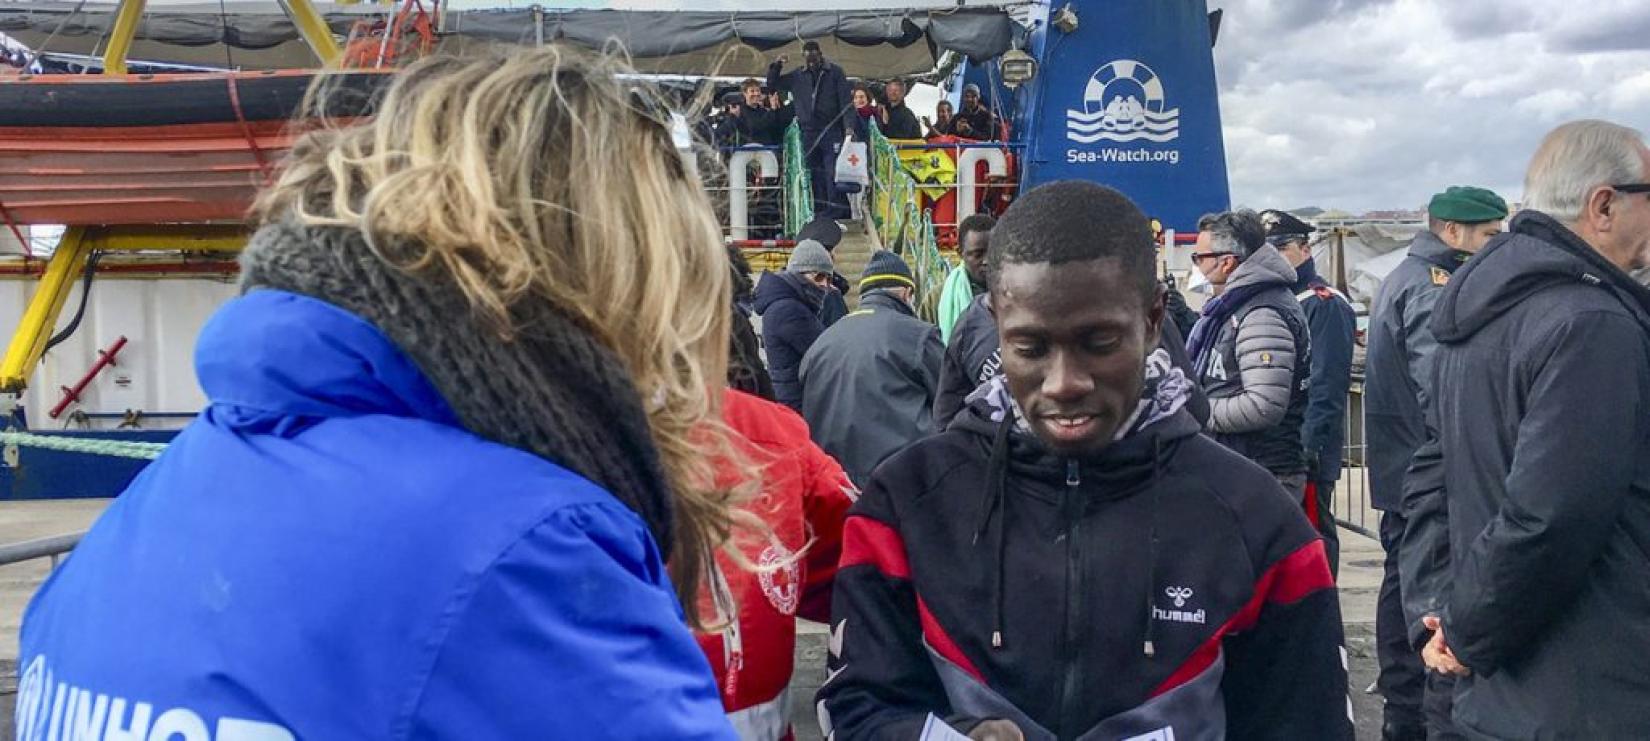 Refugiados e migrantes resgatados desembarcam em porto siciliano de Catânia, na Itália, em janeiro. Foto: ACNUR/Alessio Mamo